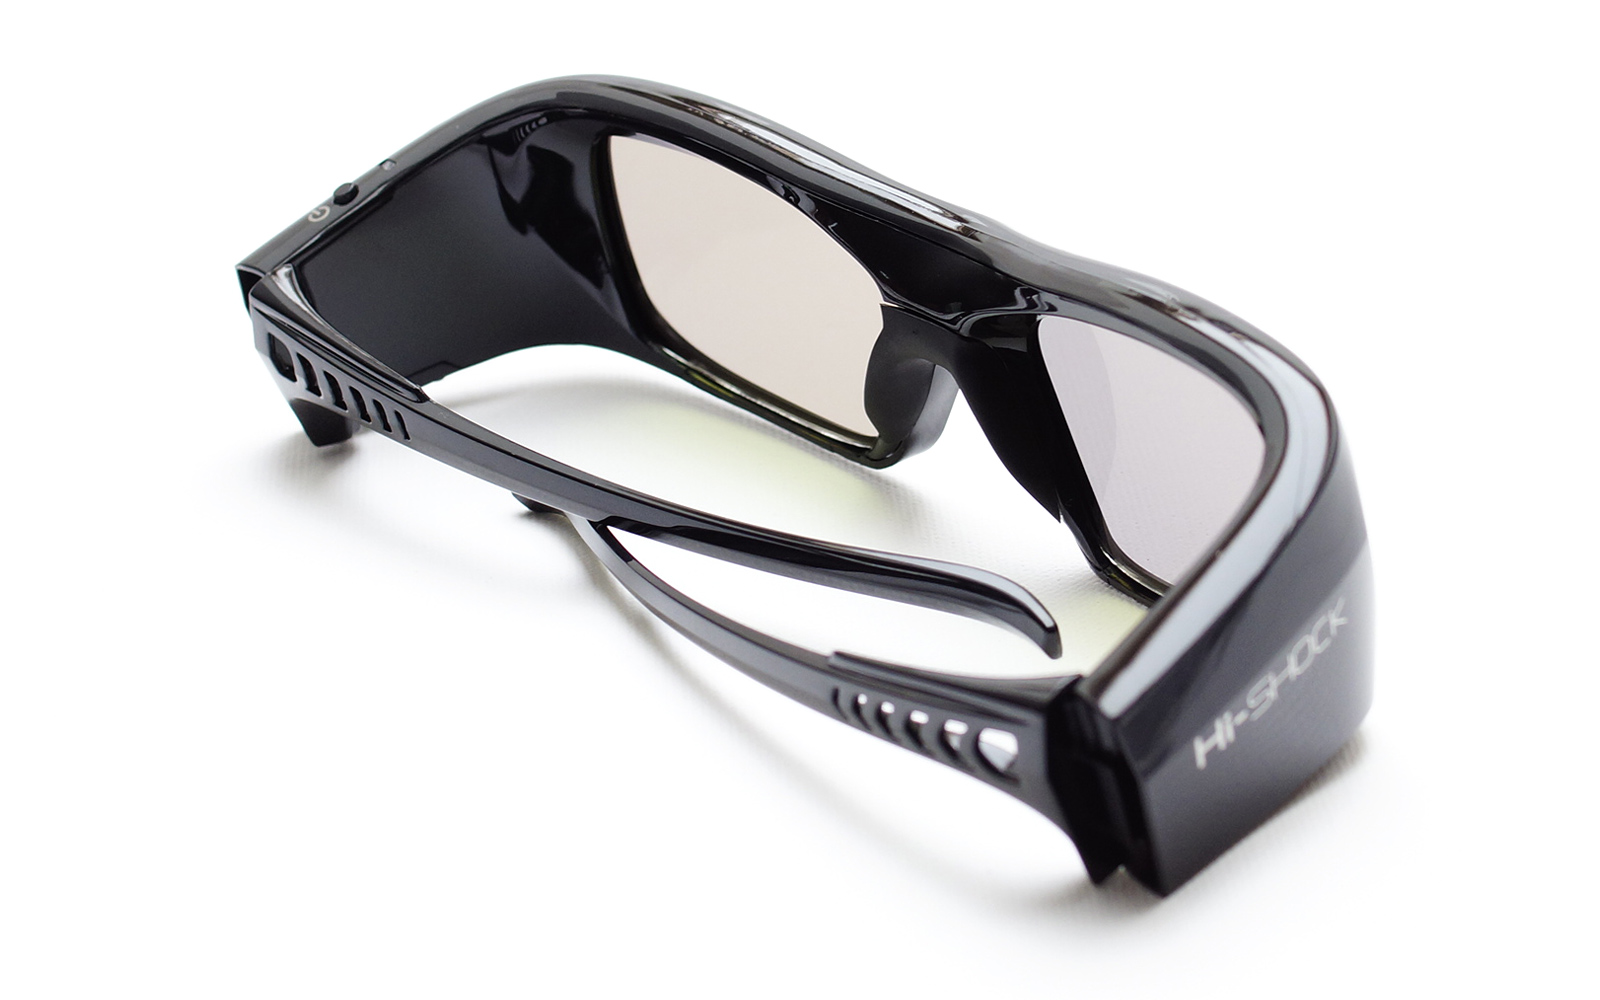 Link für Pro aktive Beamer schwarz DLP HI-SHOCK Diamond Brille Brille - - 3D 3D Black 3D wiederaufladbar DLP